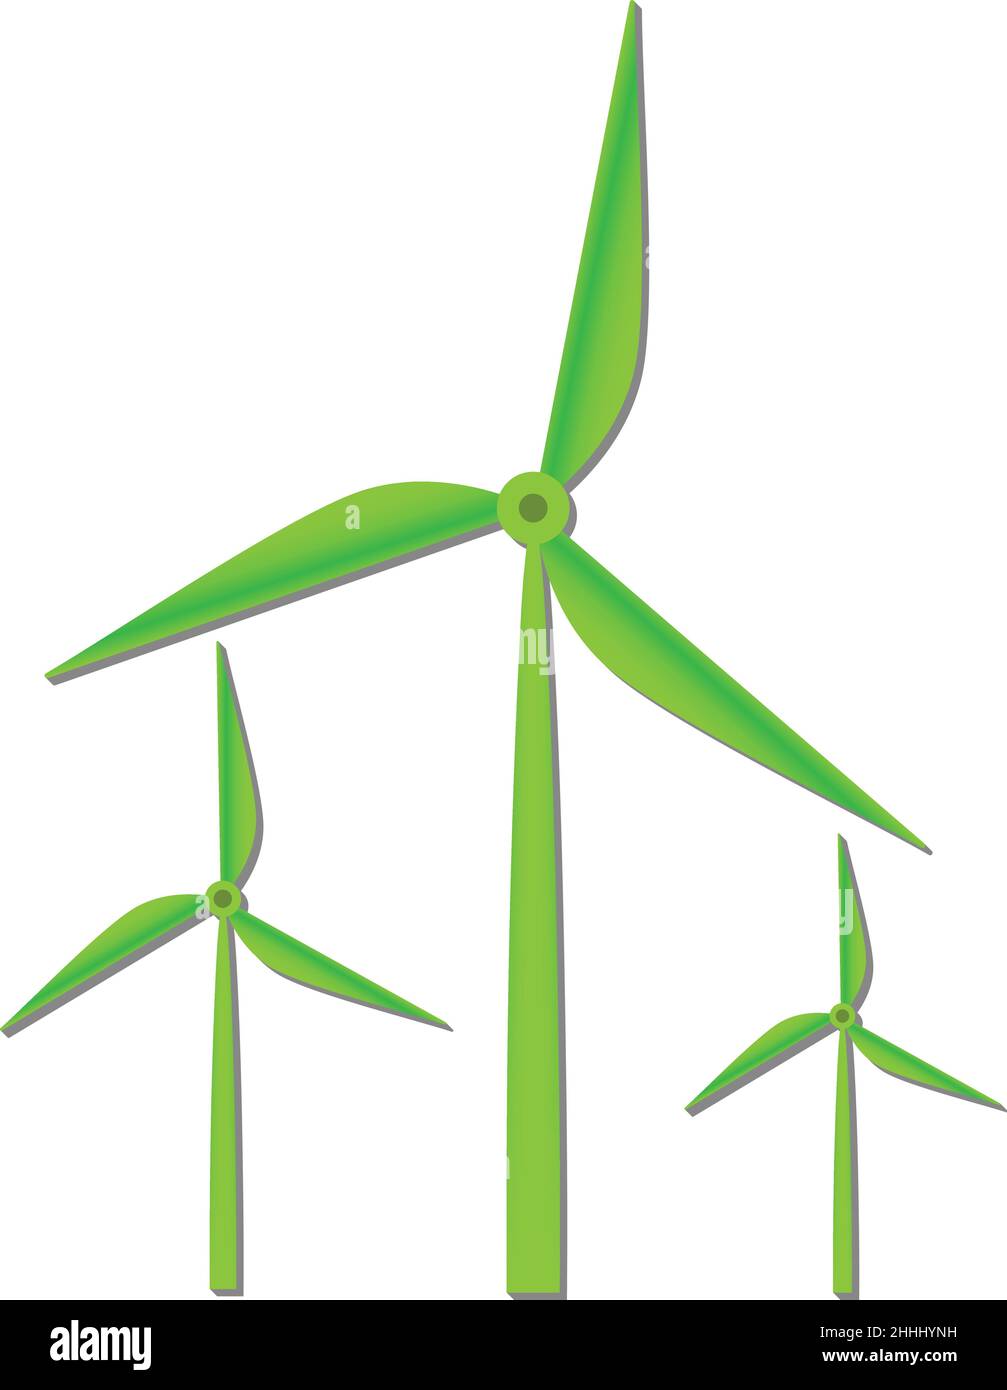 éolienne, symbole de la centrale éolienne isolée sur fond blanc, illustration vectorielle Illustration de Vecteur